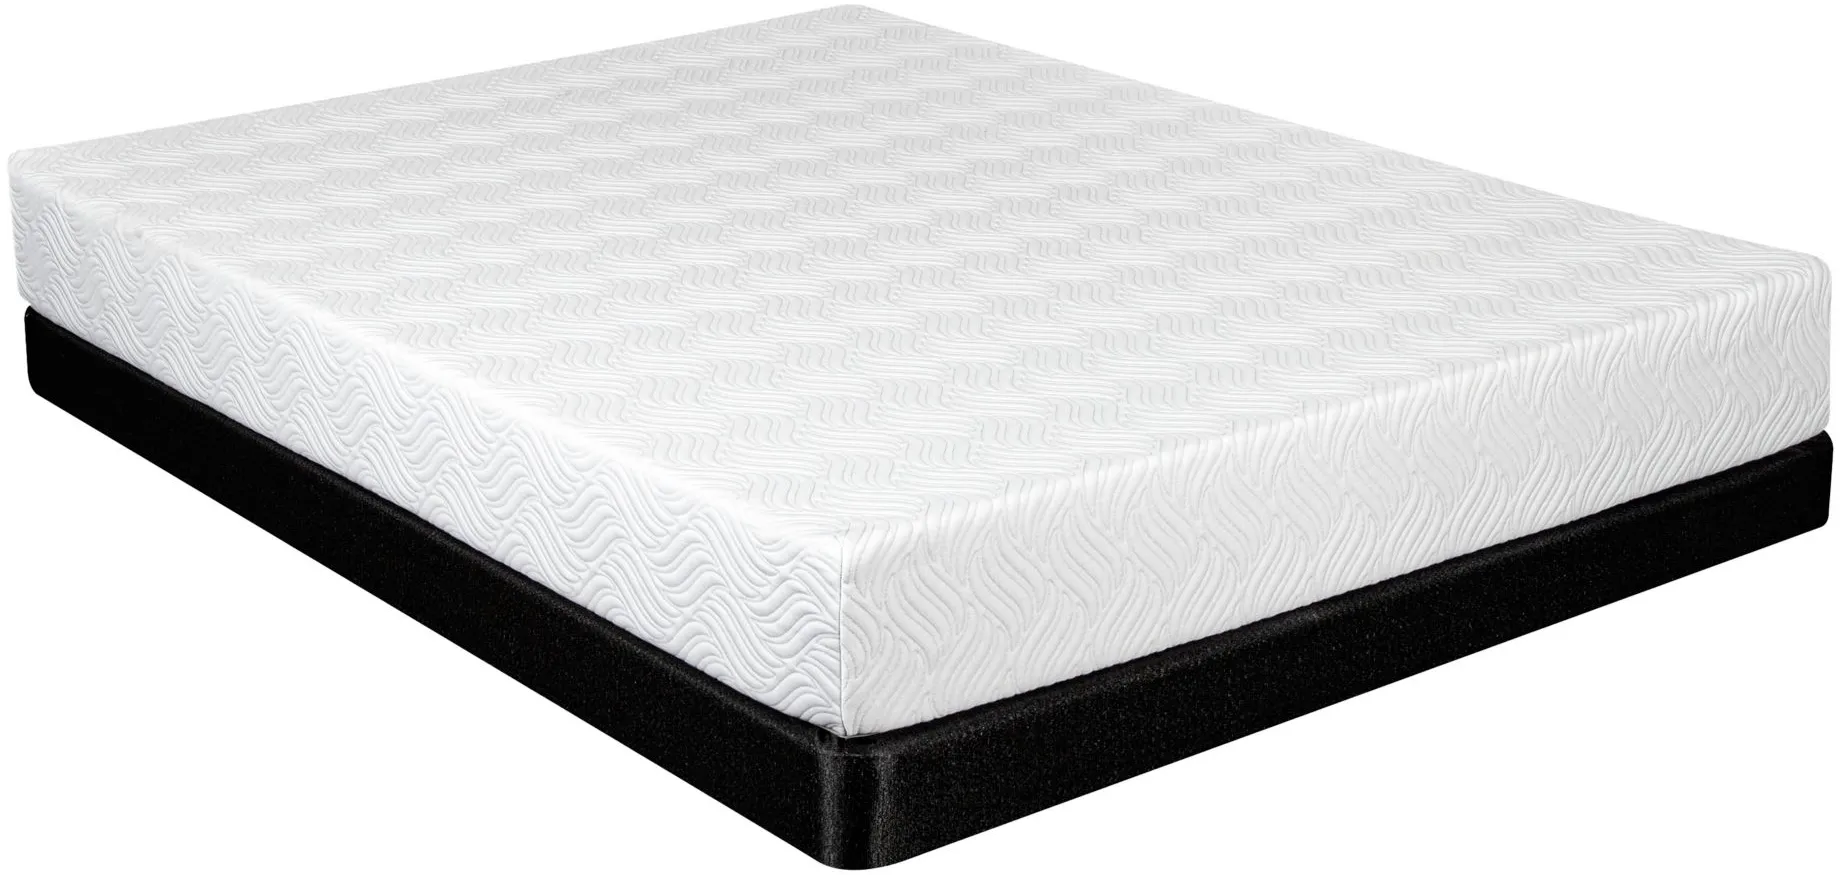 bellanest imperial mattress reviews